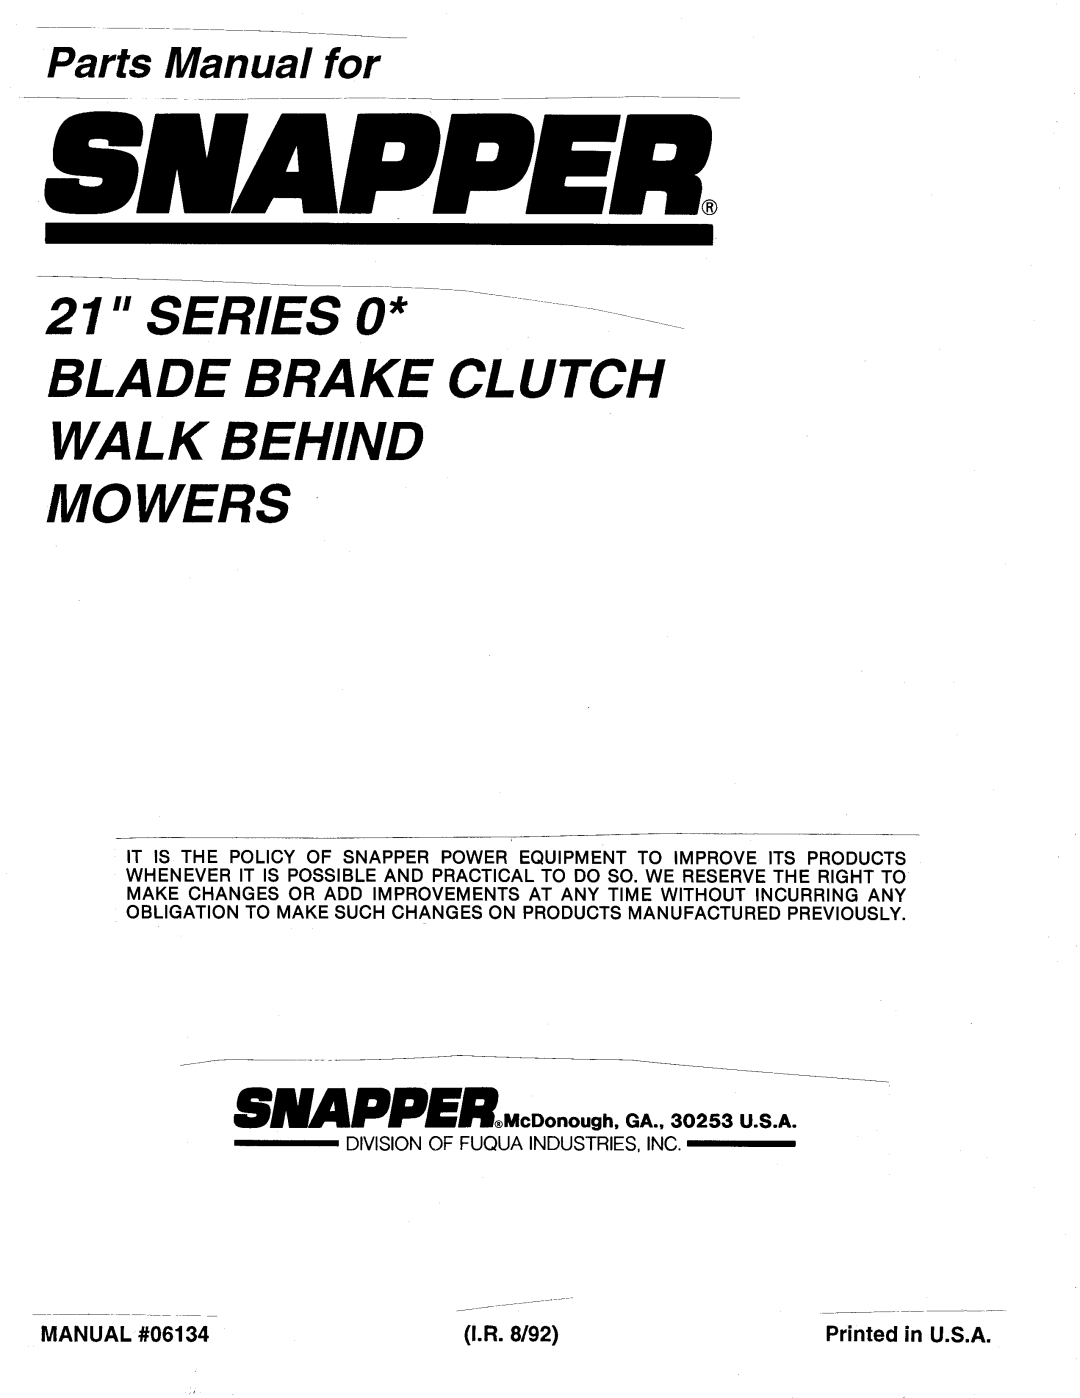 Snapper 06134 manual 